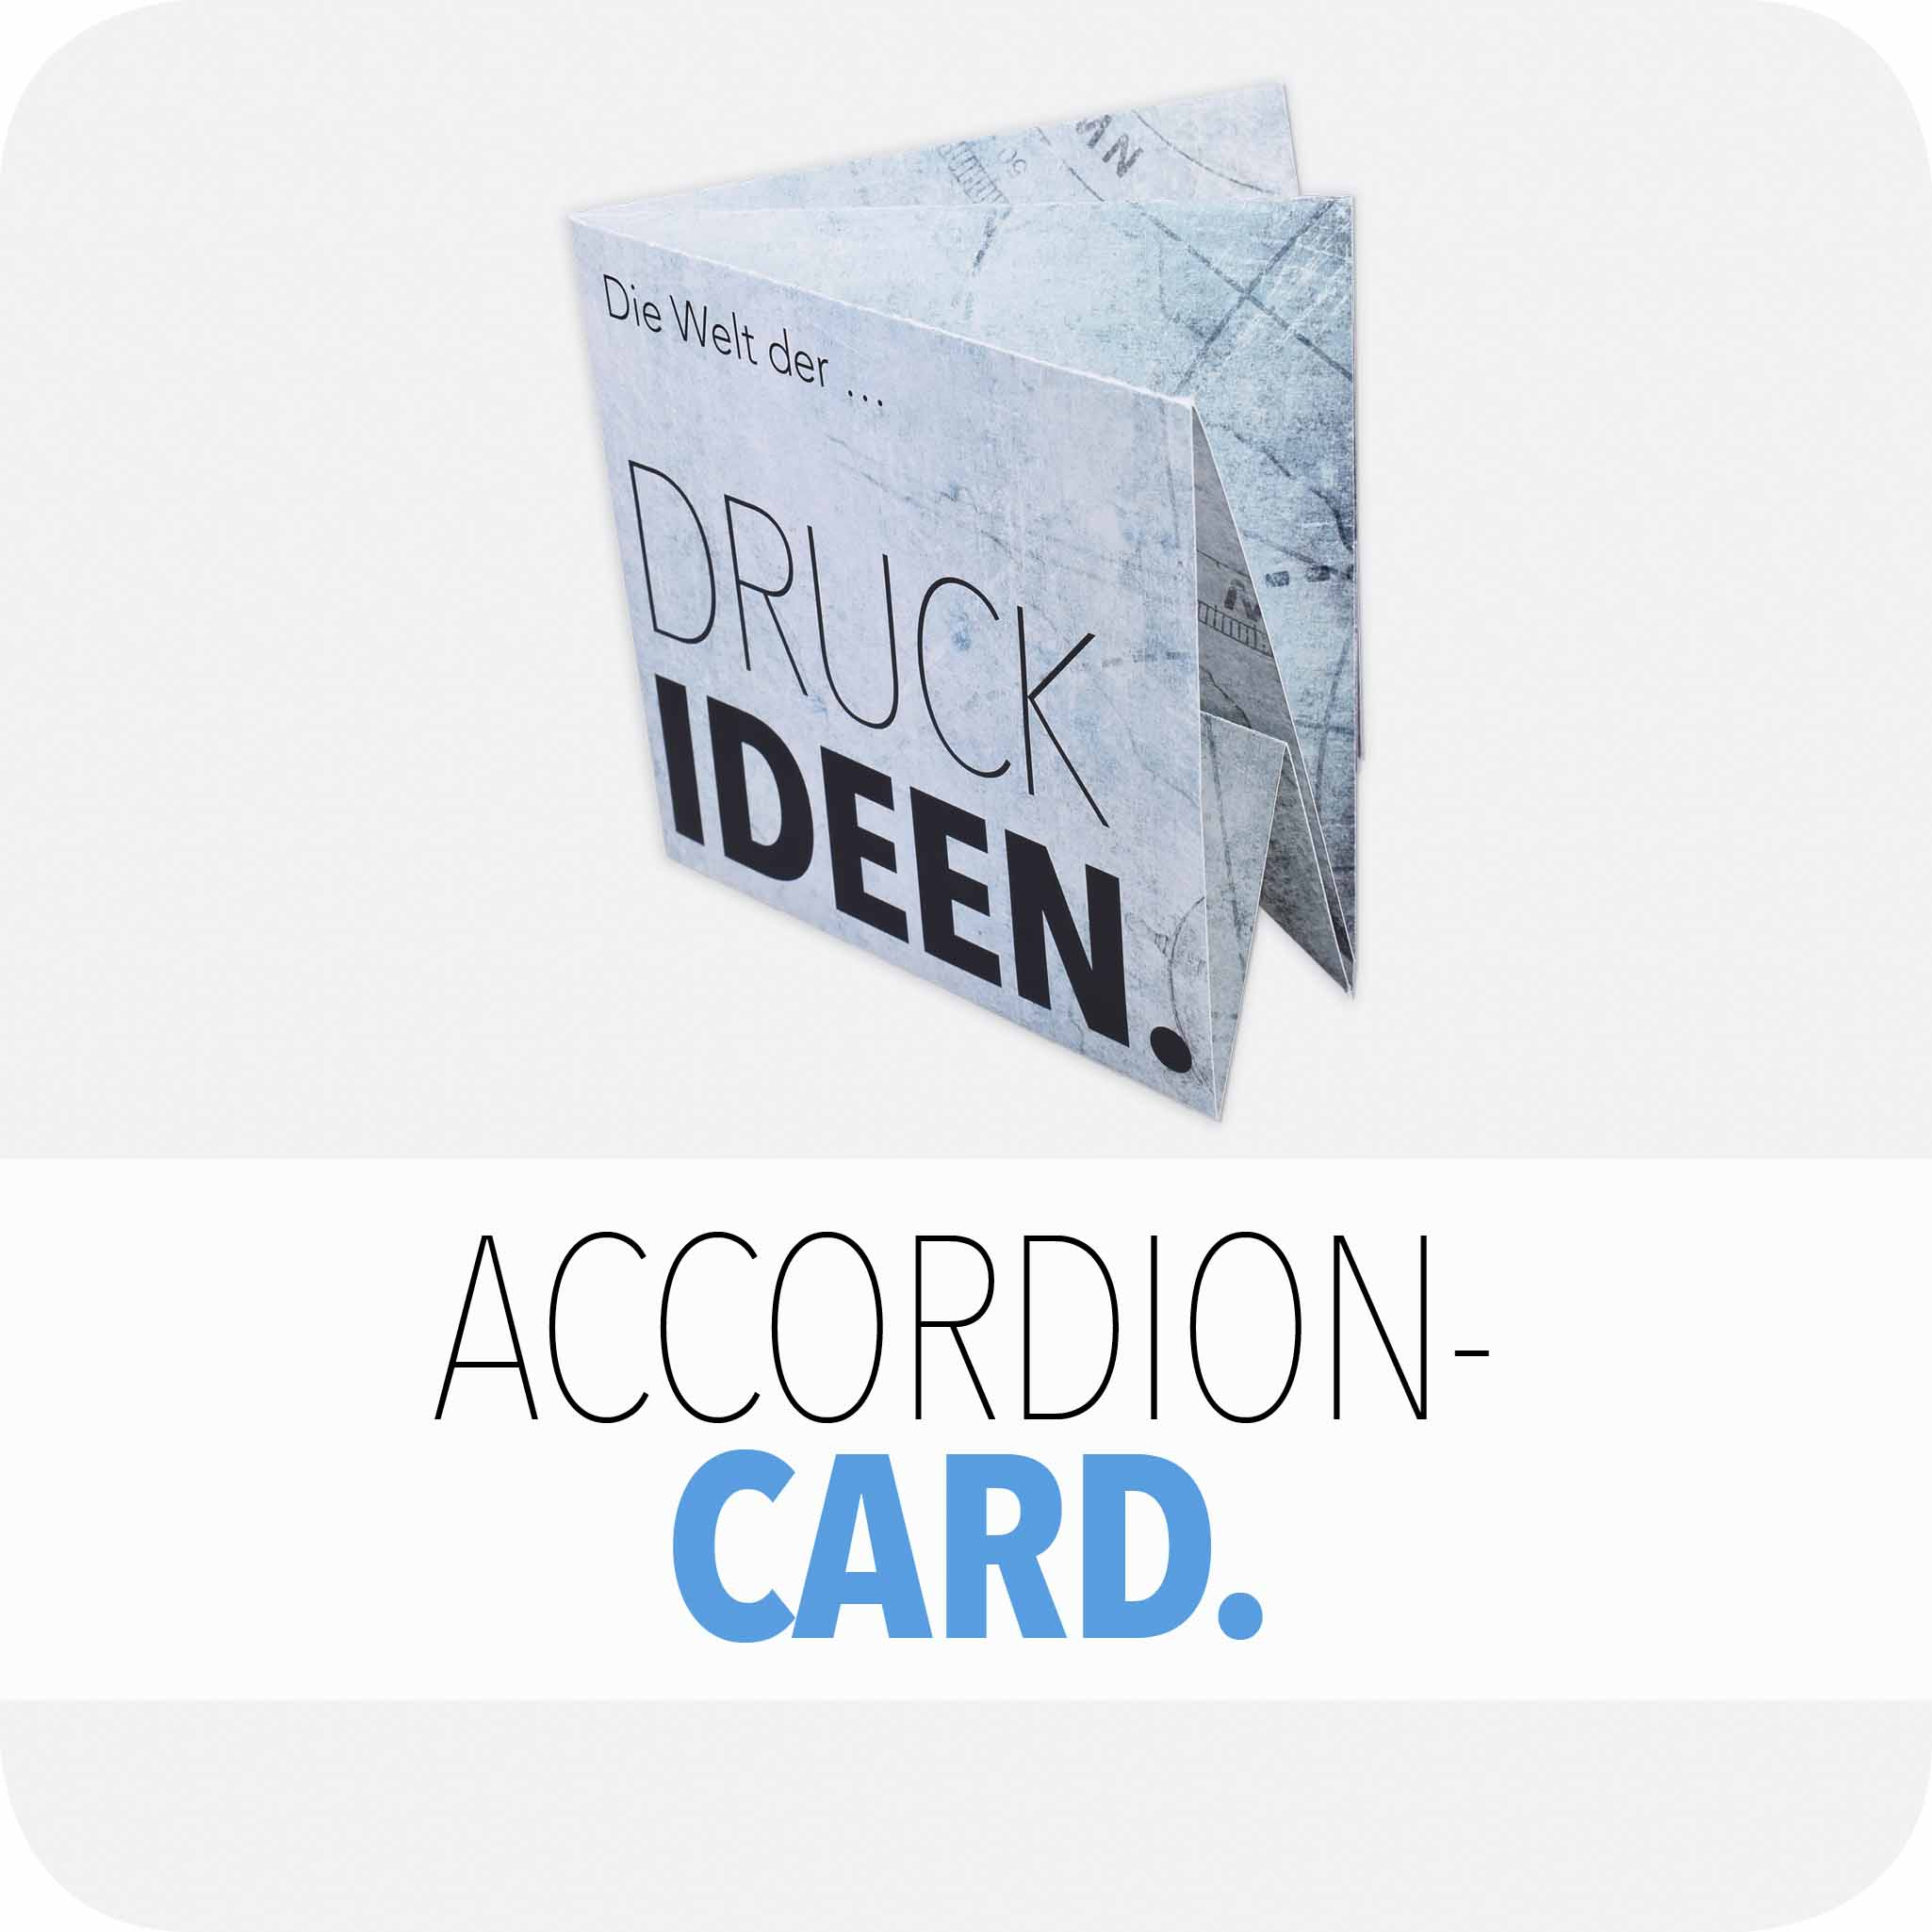 Accordion card